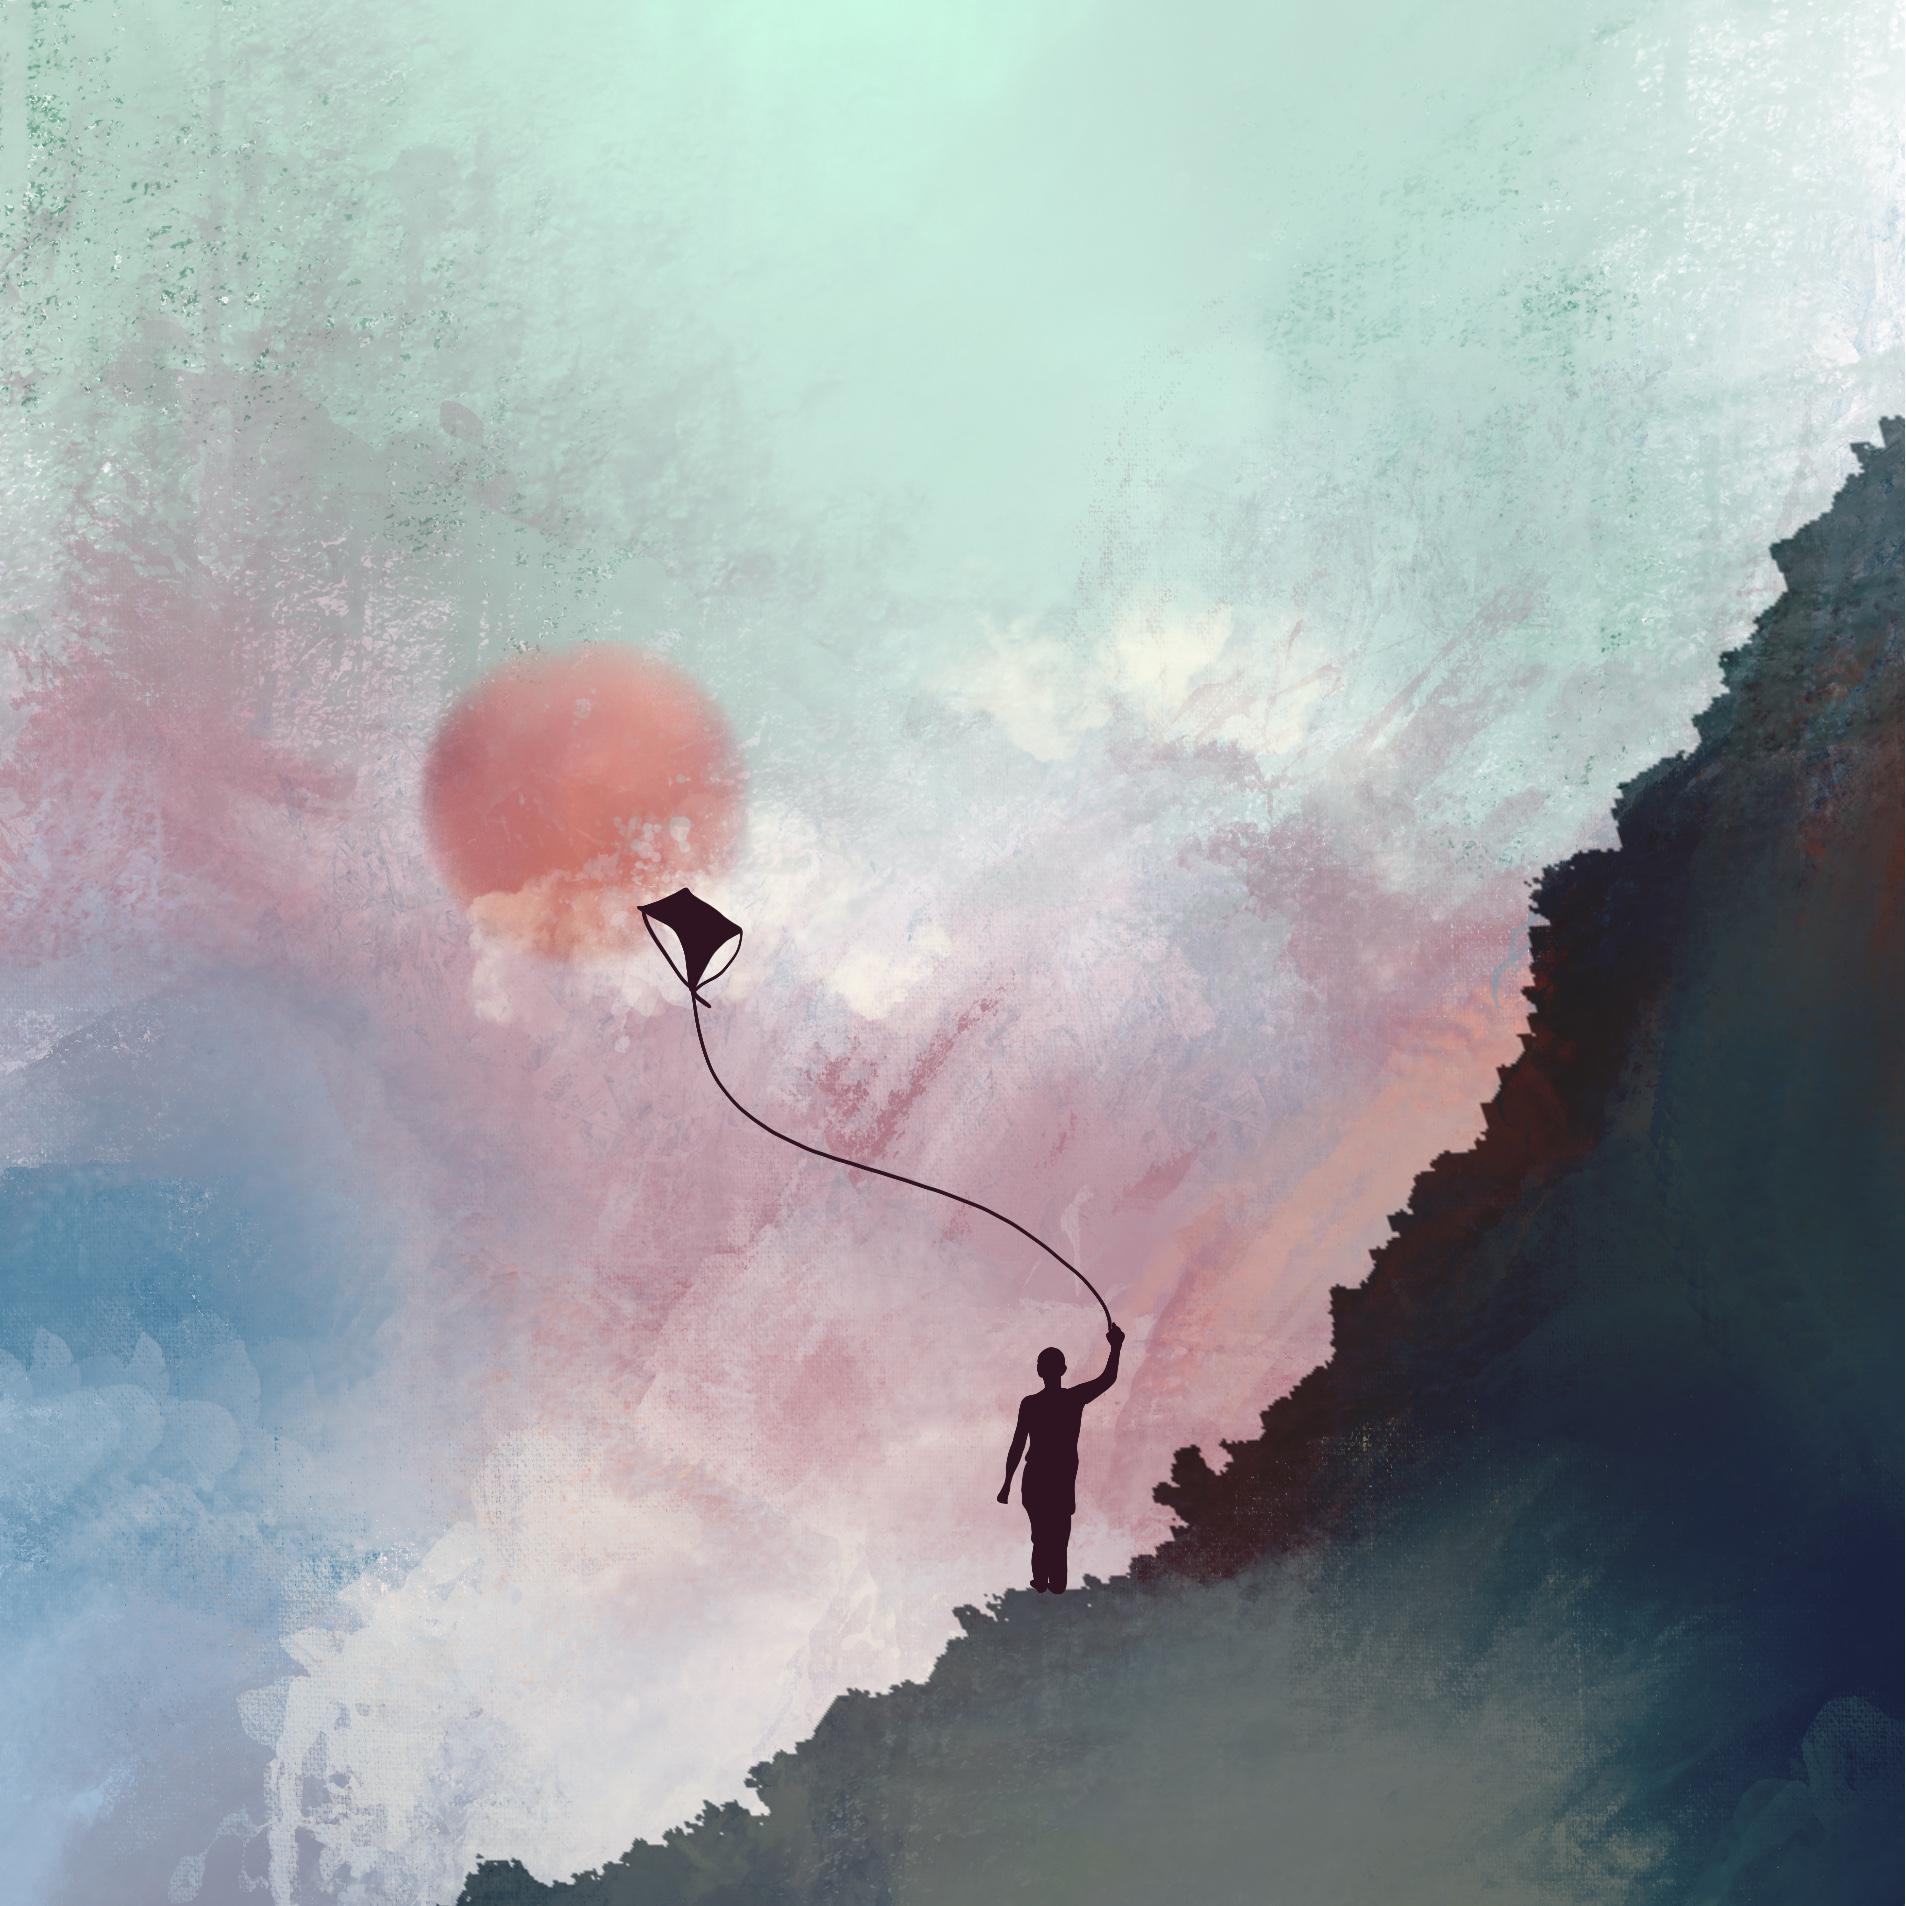 孤独且自由歌词 歌手阿桐木同-专辑孤独且自由-单曲《孤独且自由》LRC歌词下载